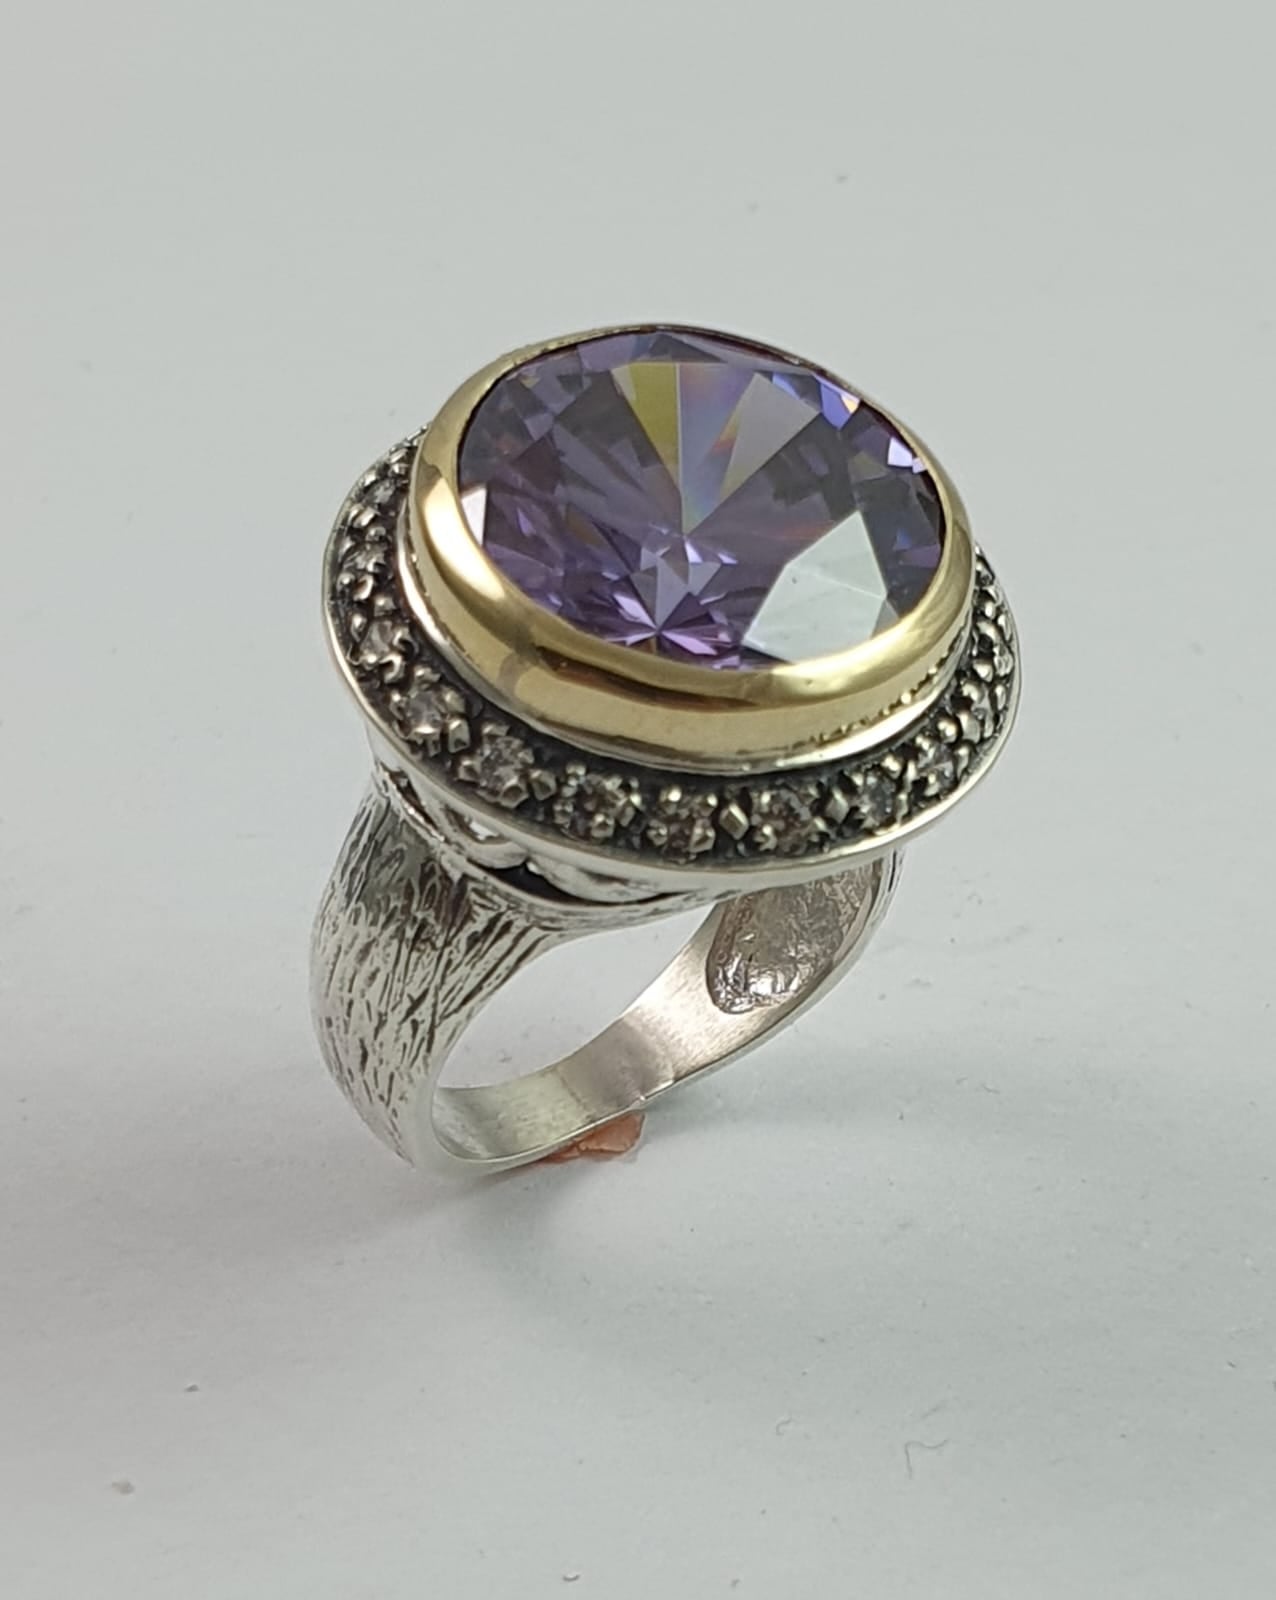 Taraash 925 Sterling Silver Heart Finger Ring For Women